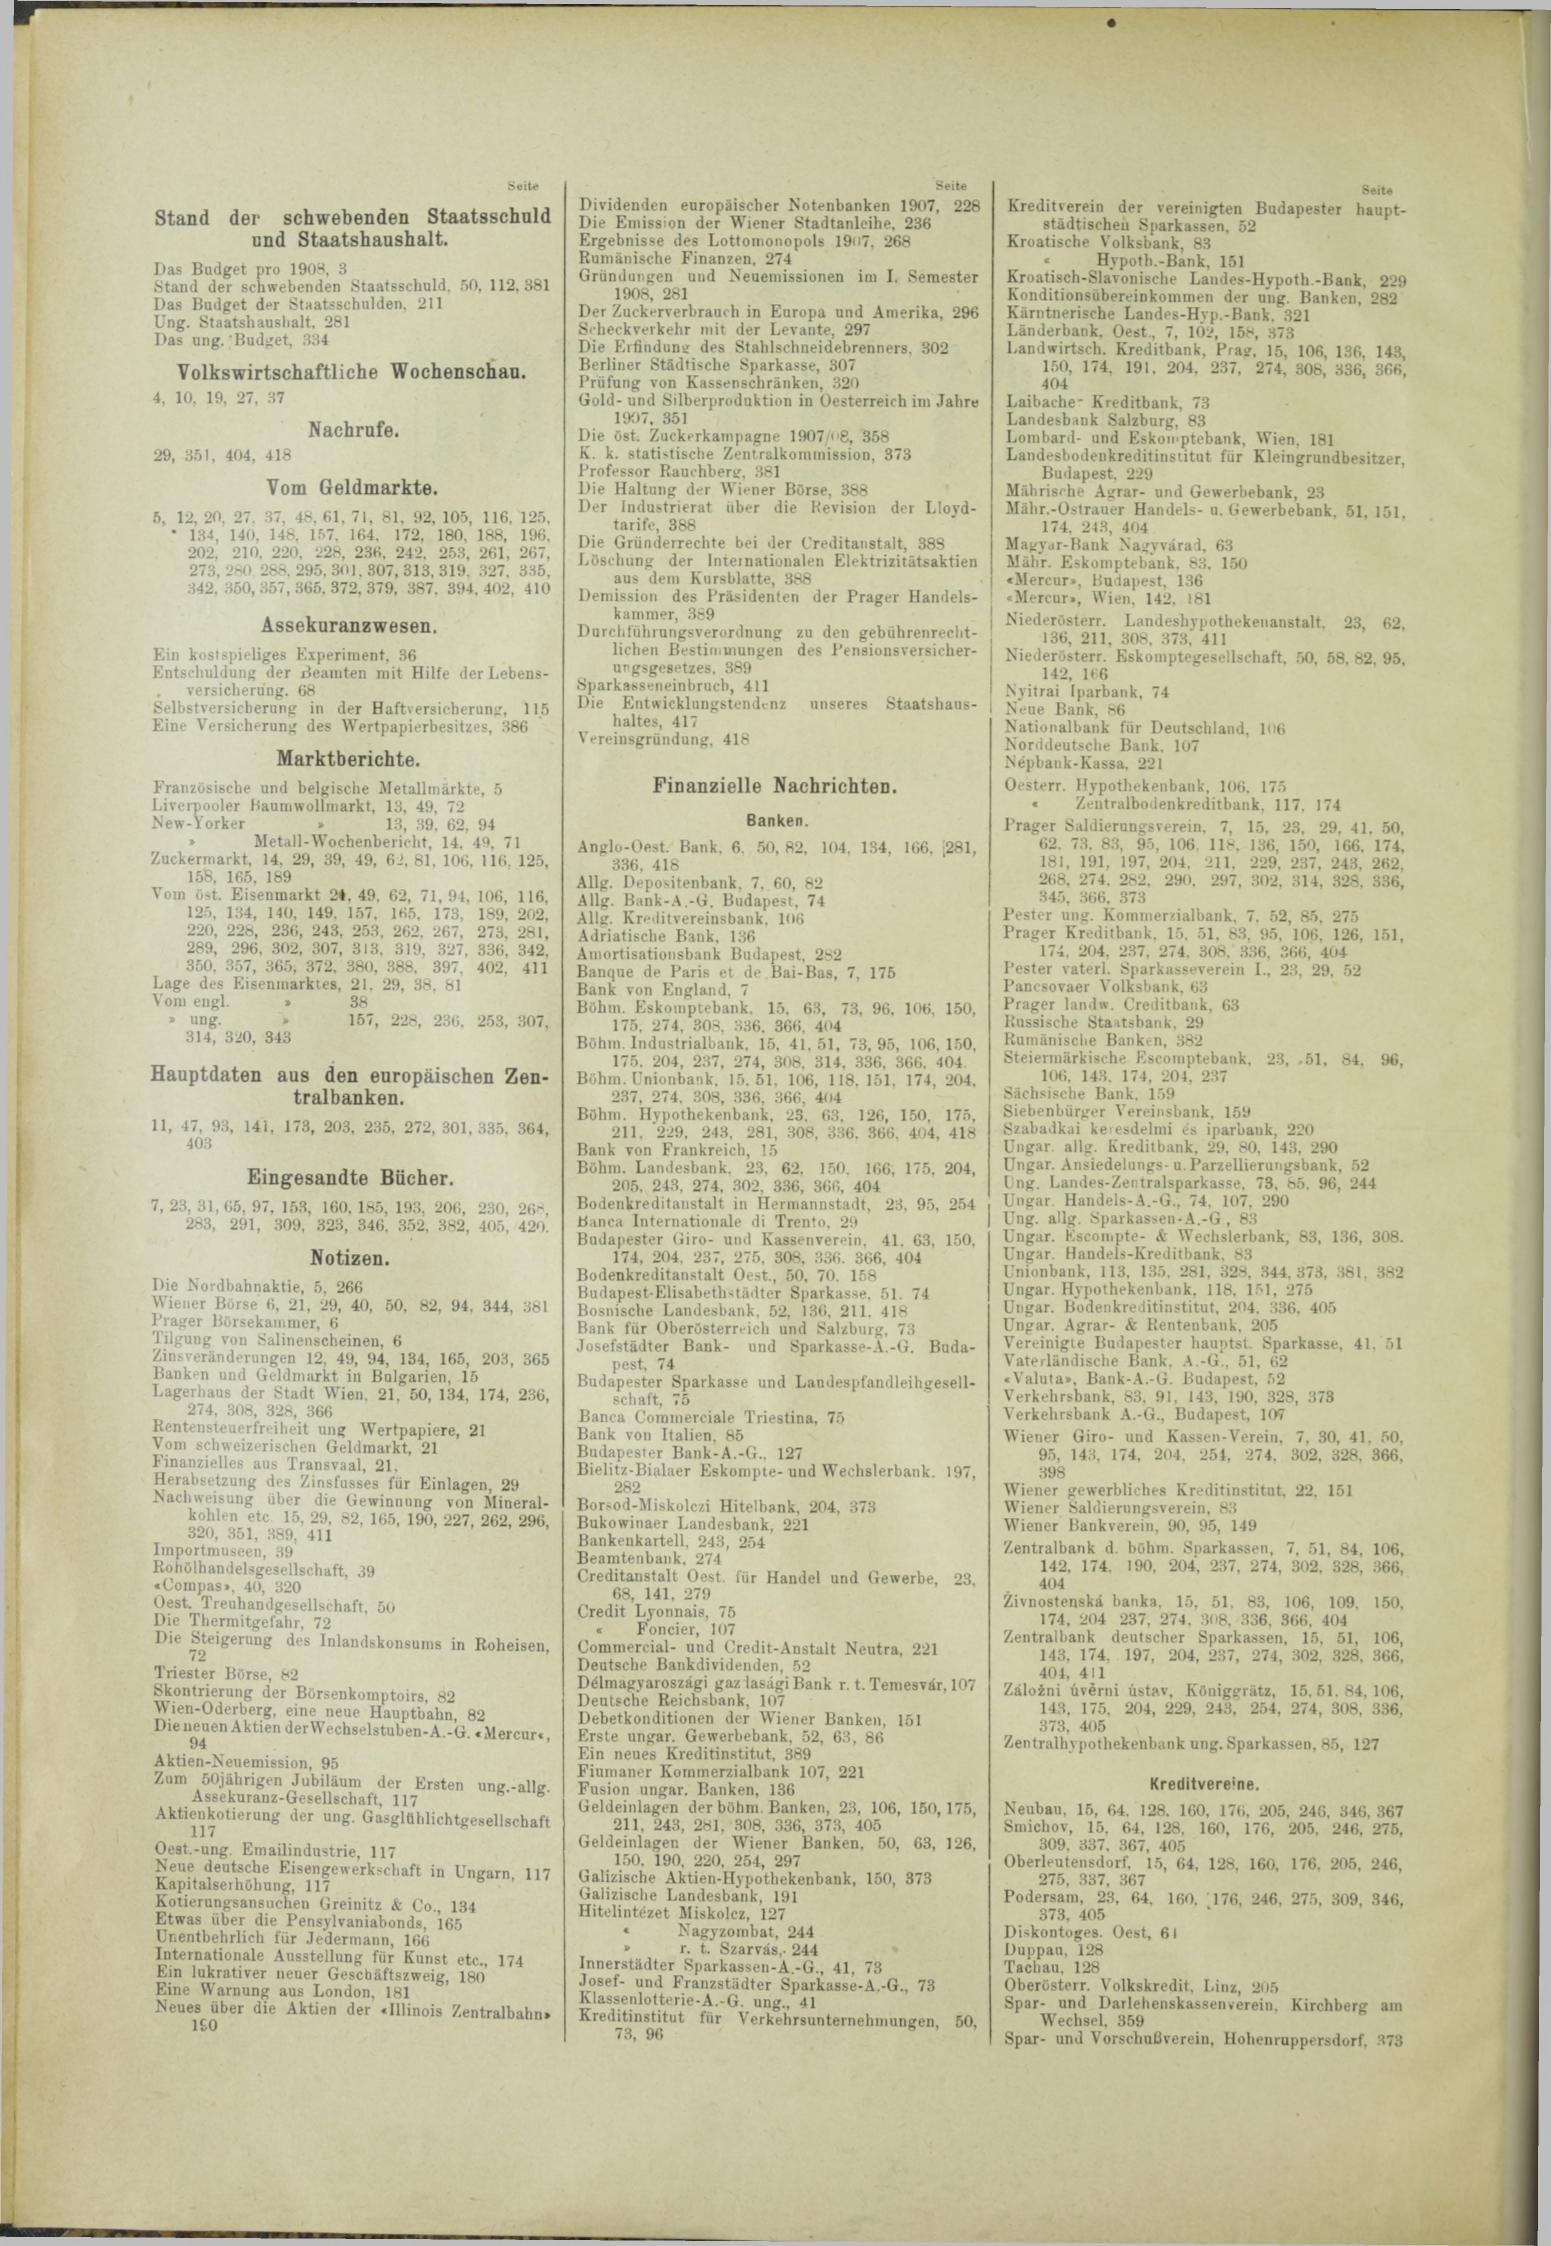 Der Tresor 24.10.1908 - Seite 8